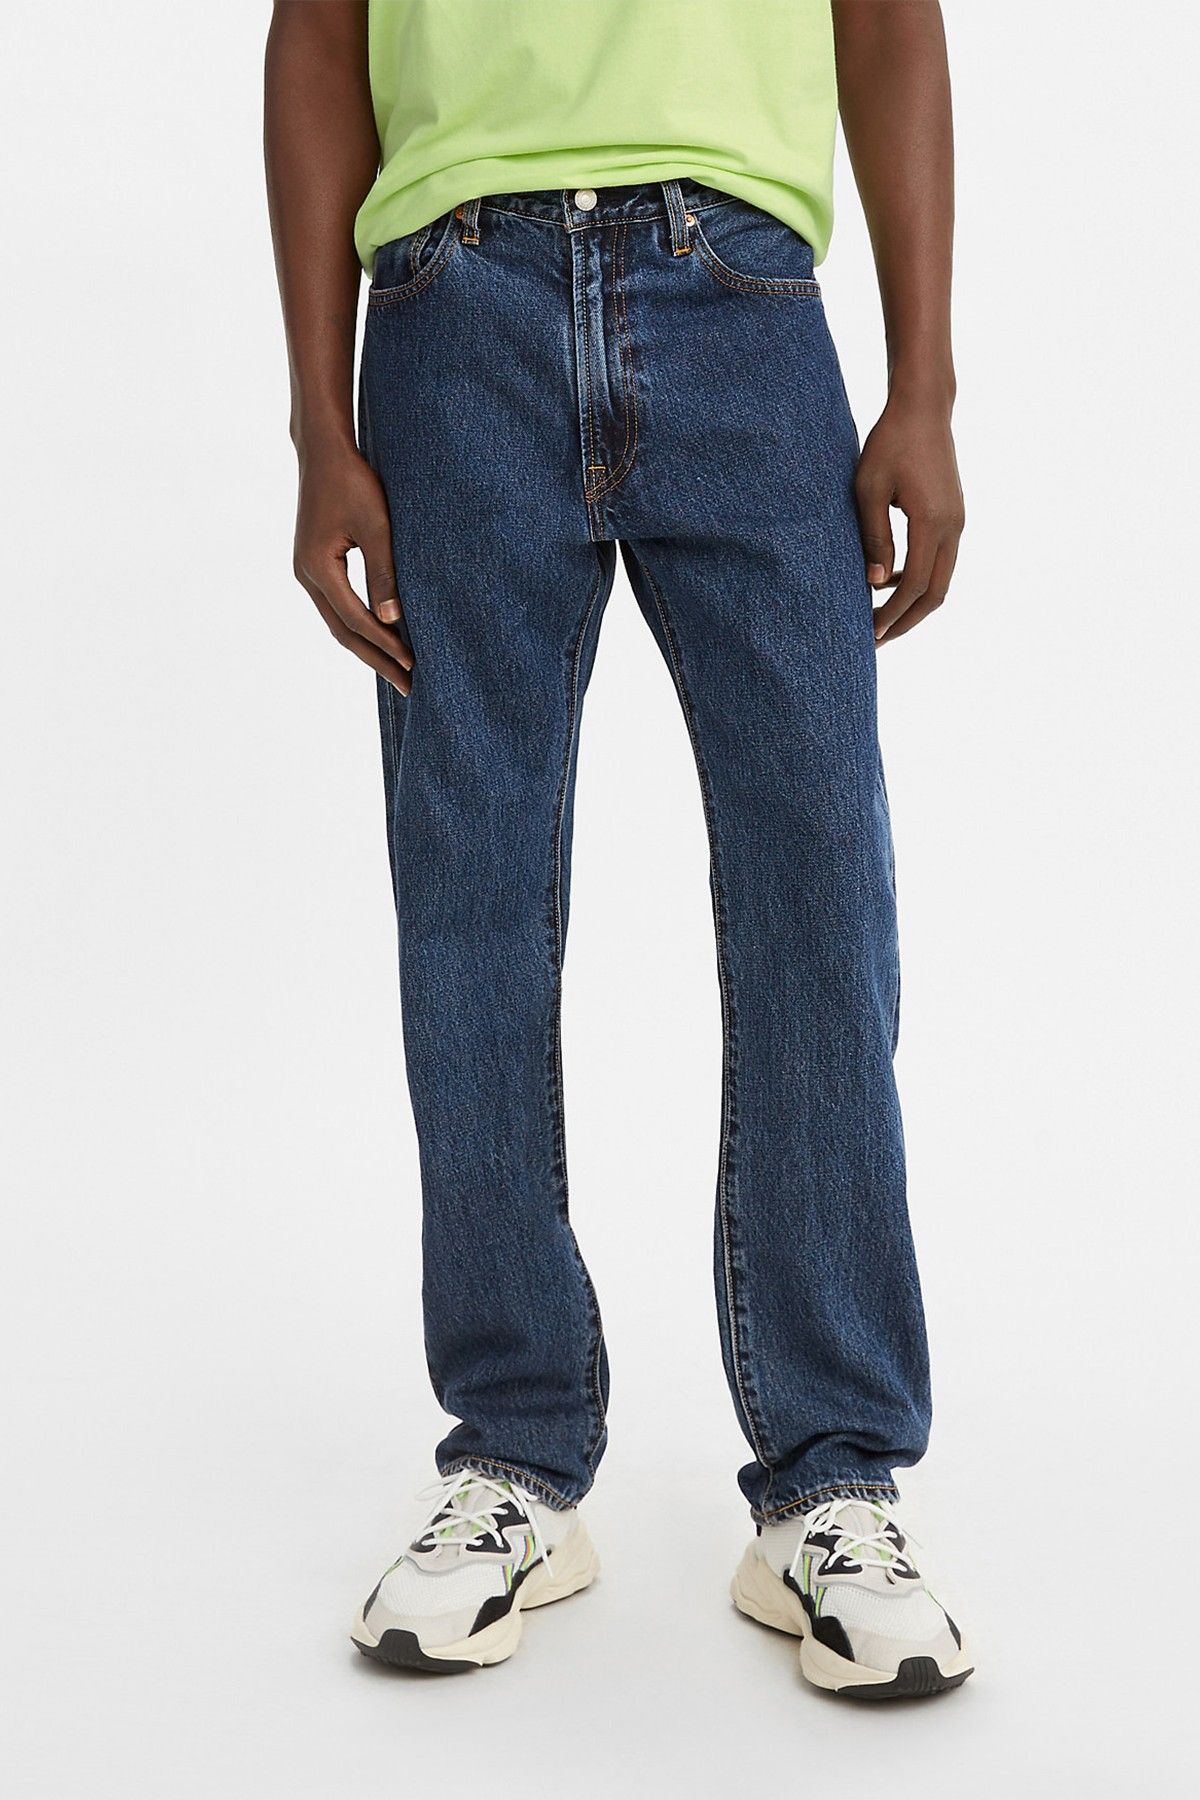 Levi's Â® 551Z Authentic Straight Rubber Worm Men Jeans|